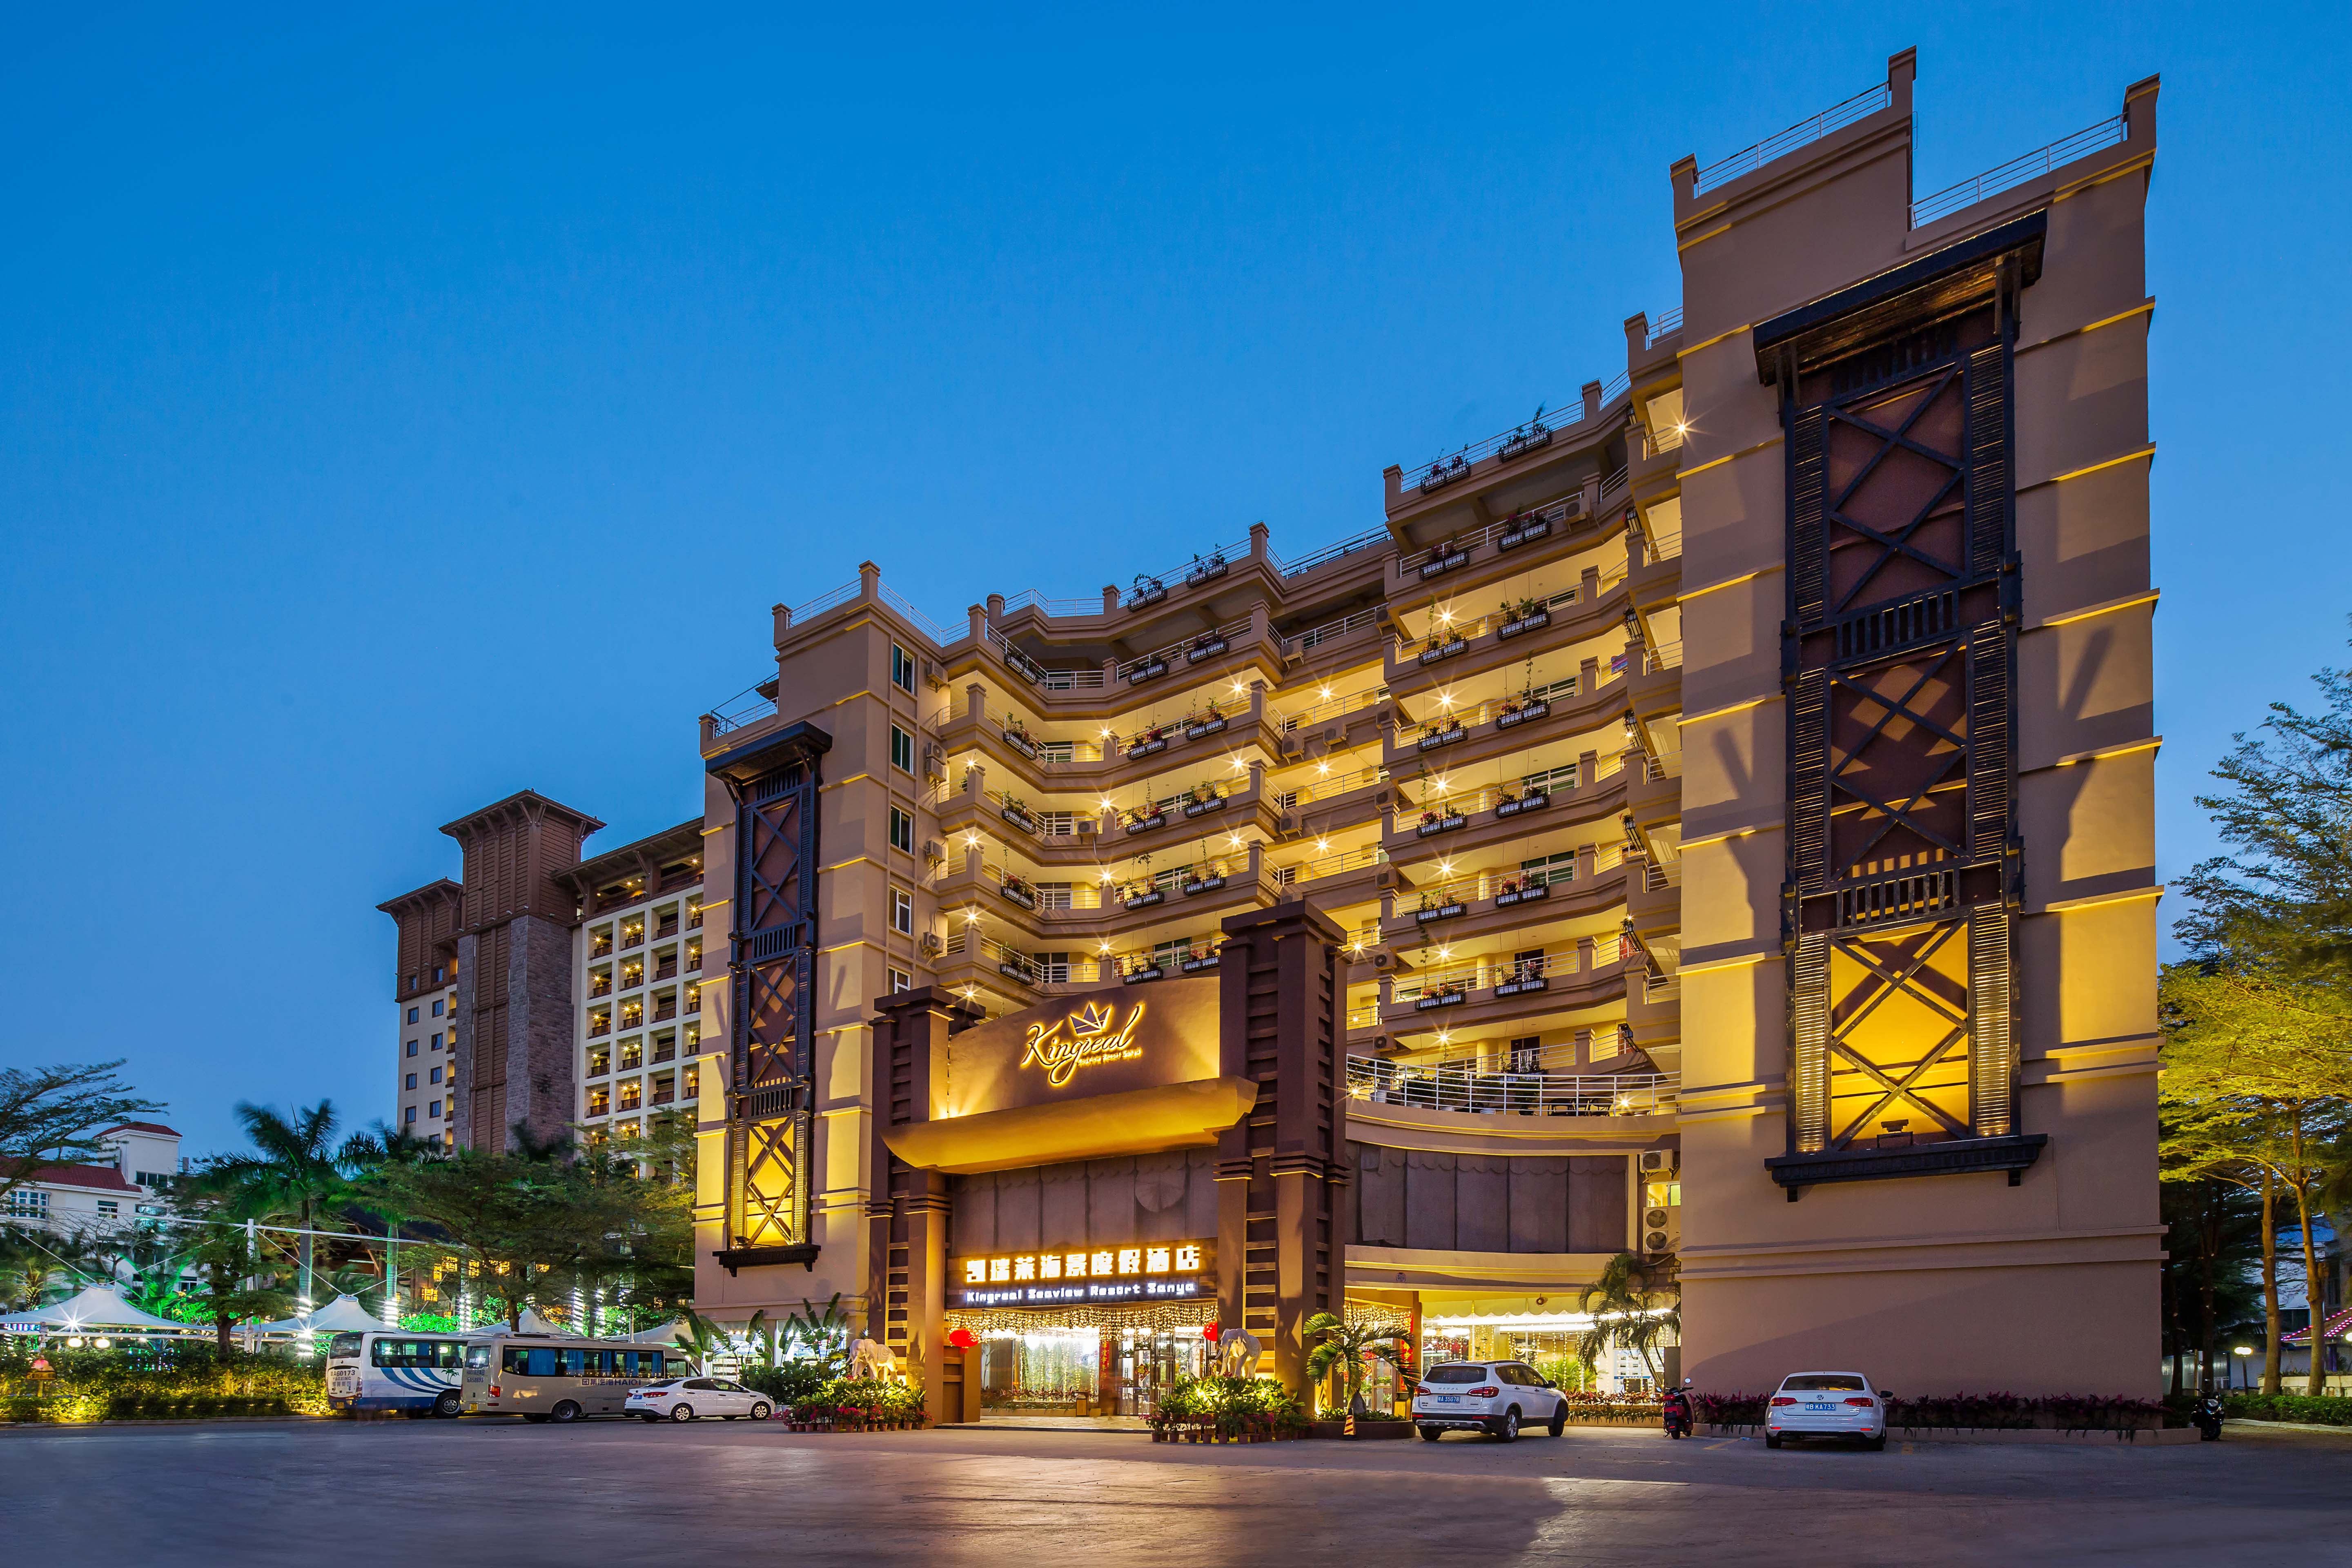 三亚亚龙湾美高梅度假酒店预订及价格查询,MGM Grand Sanya_八大洲旅游